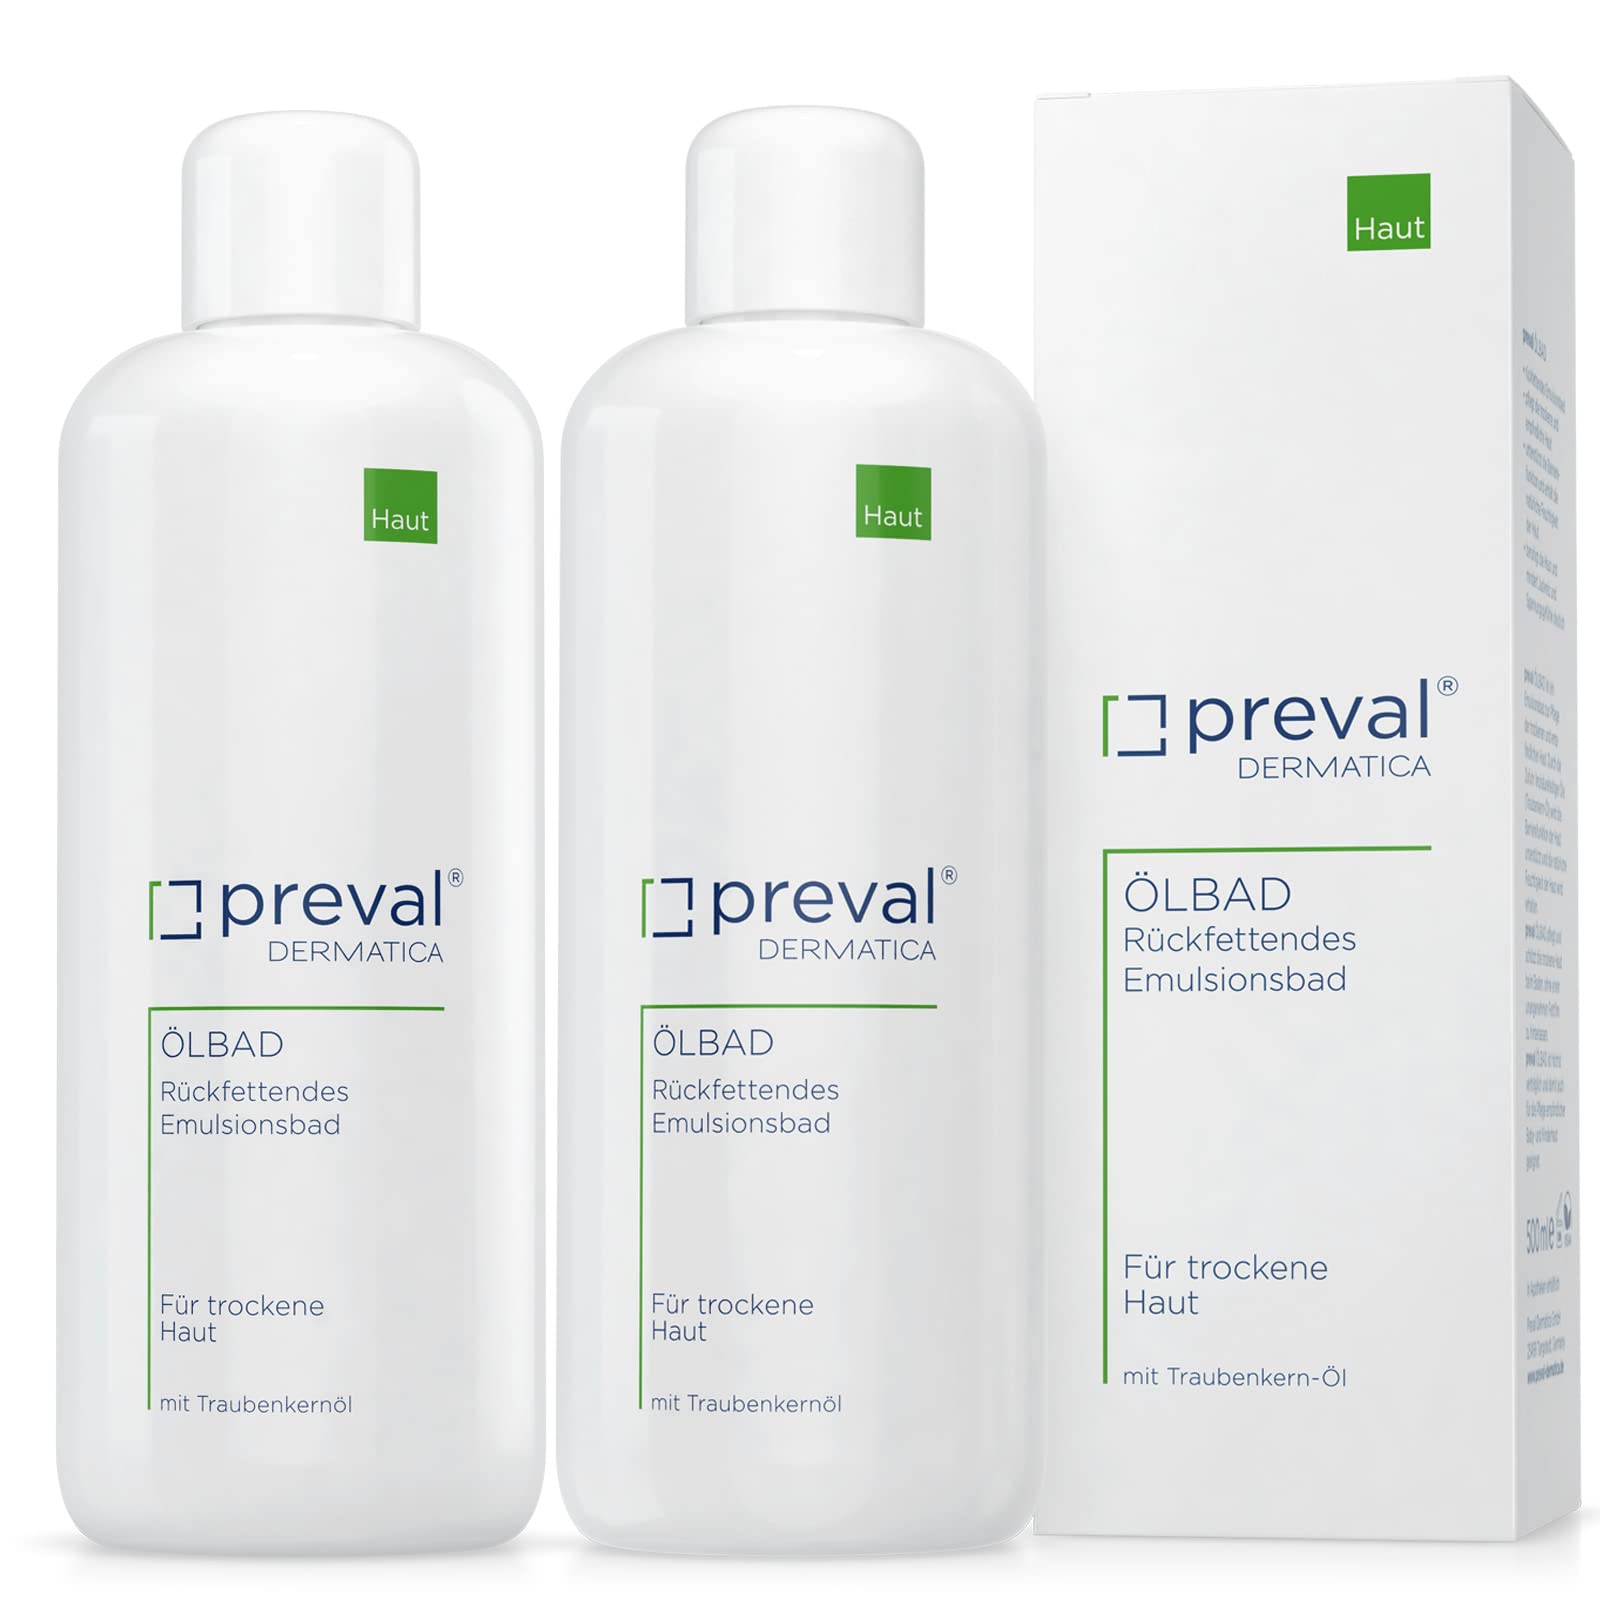 preval® ÖLBAD | Rückfettendes Emulsionsbad für trockene und empfindliche Haut (1l)